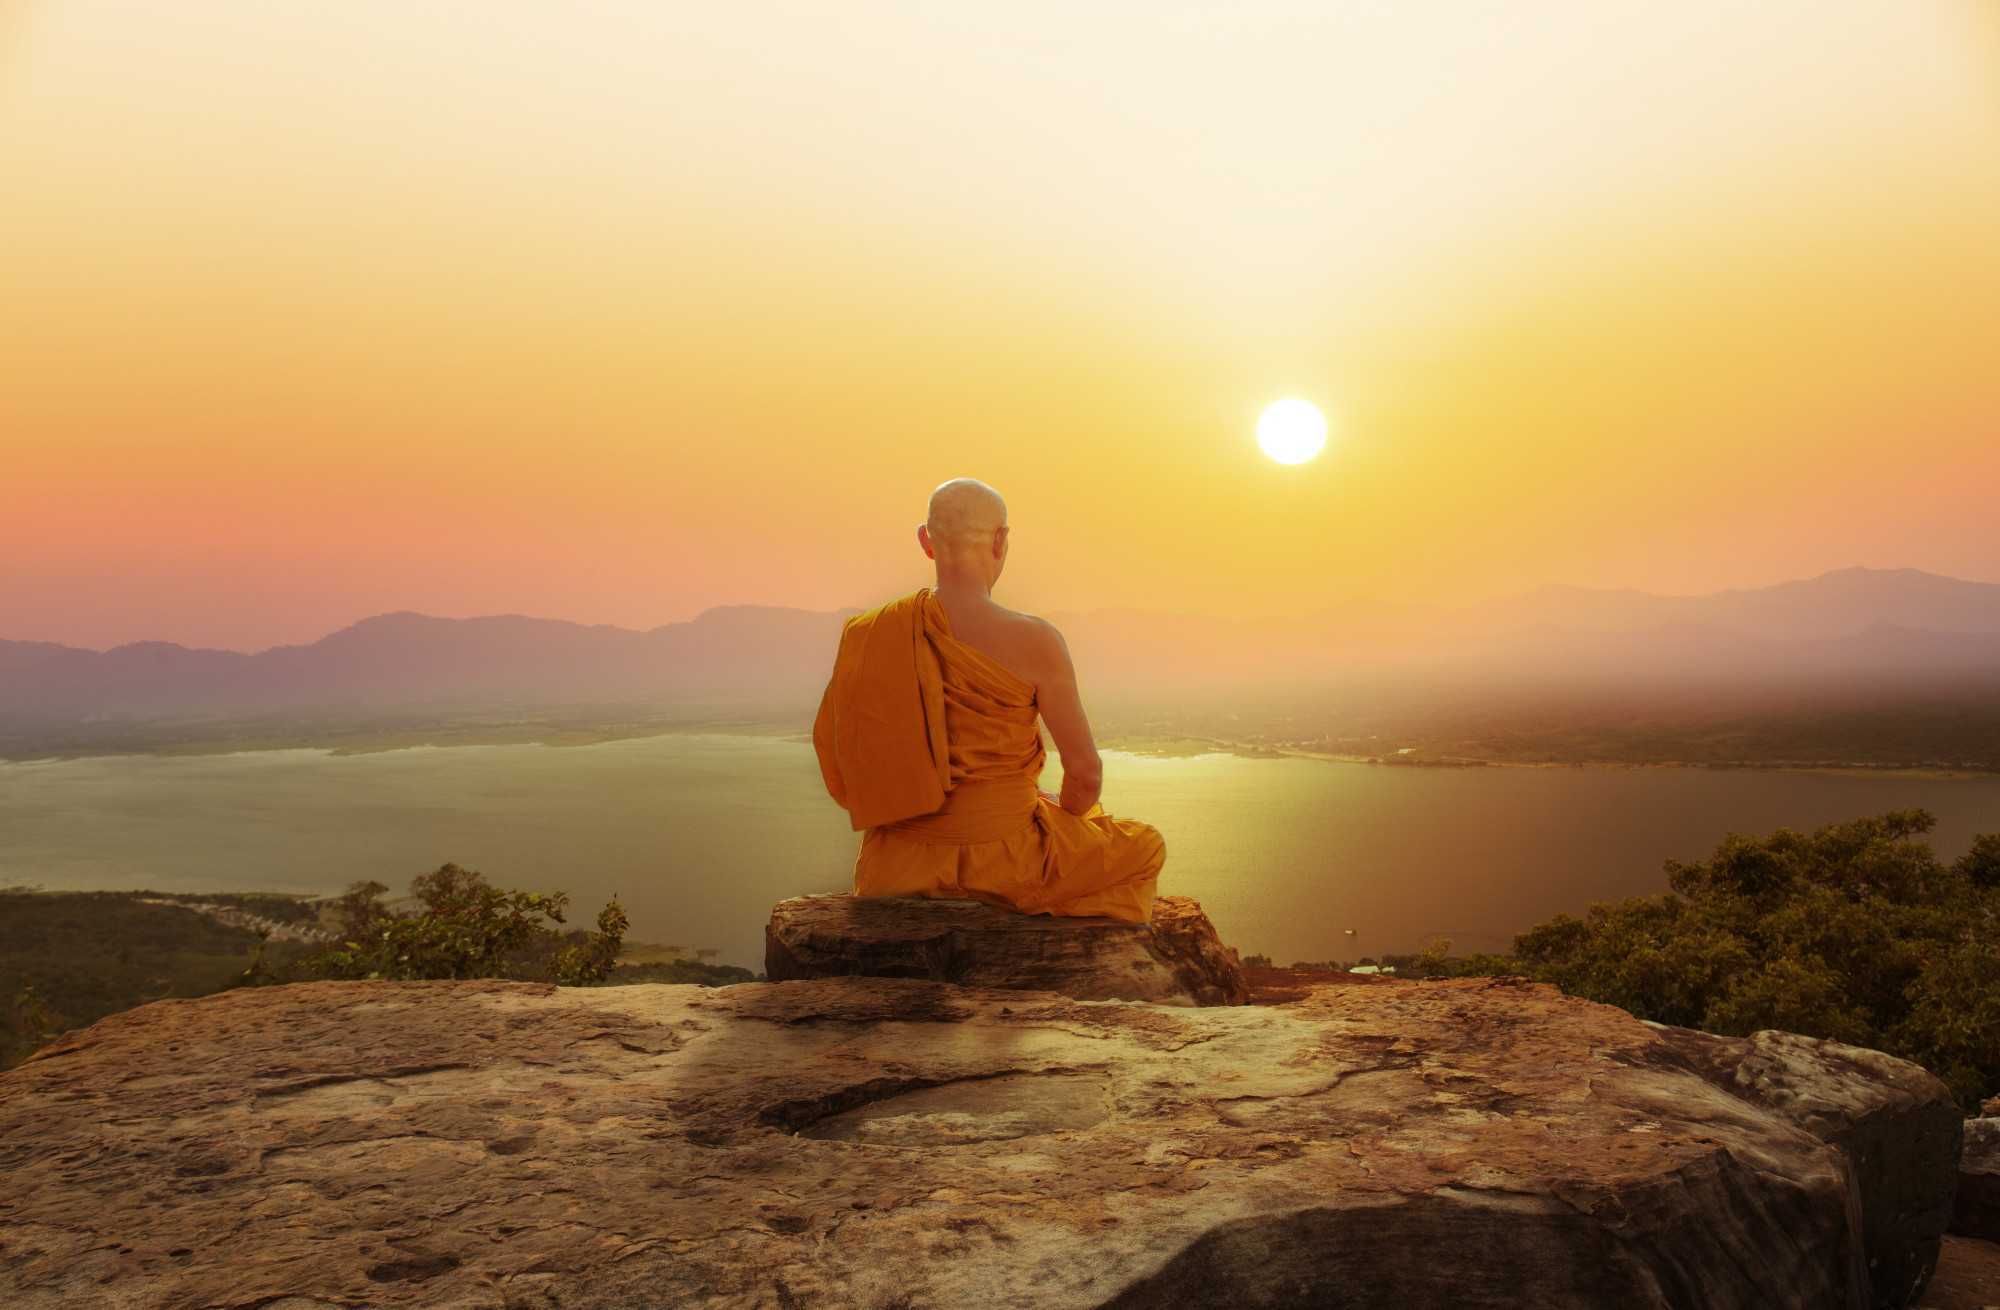 Утренняя медитация на удачный день для женщин – 3 секрета, как настроиться на предстоящий день